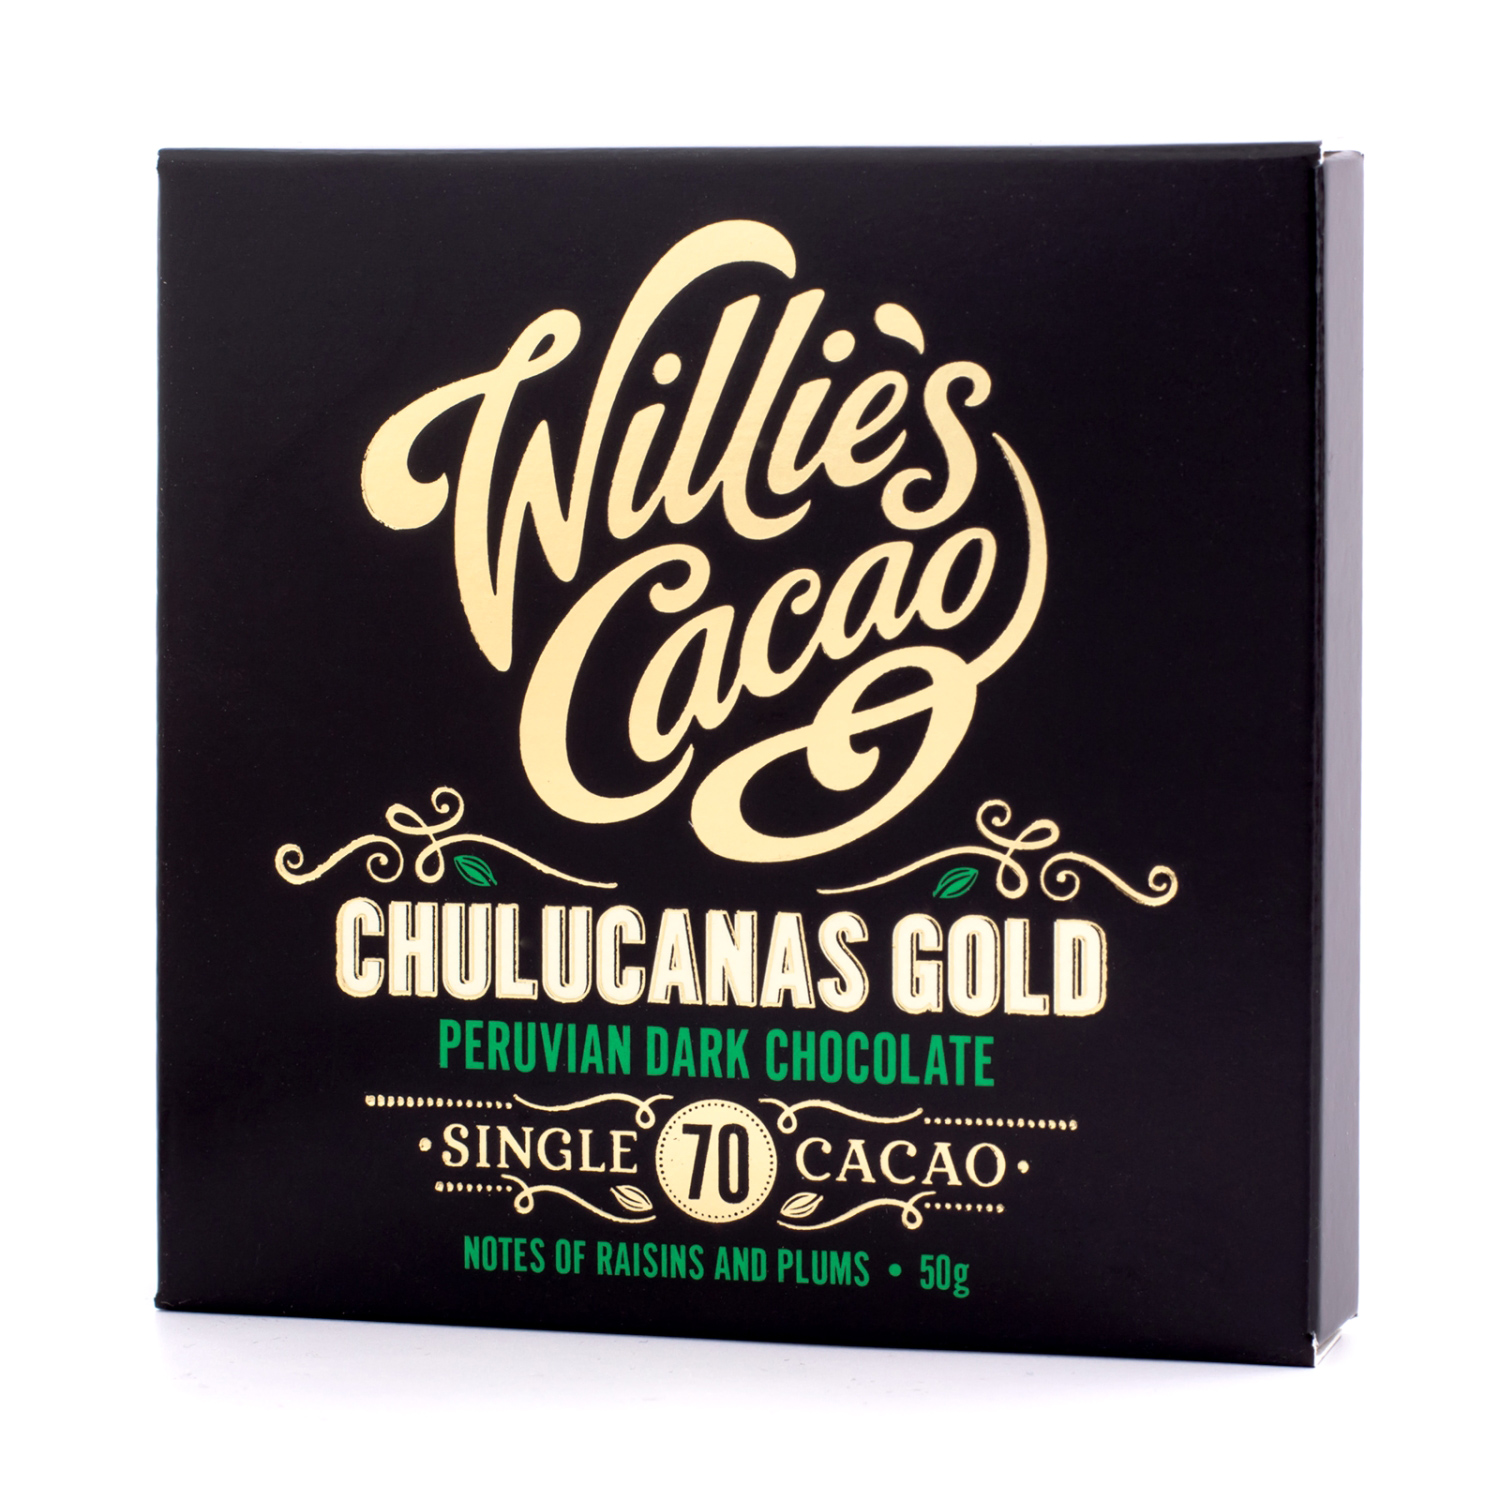 Willie's Cacao - 70% Chulucanas Gold Peru 50g